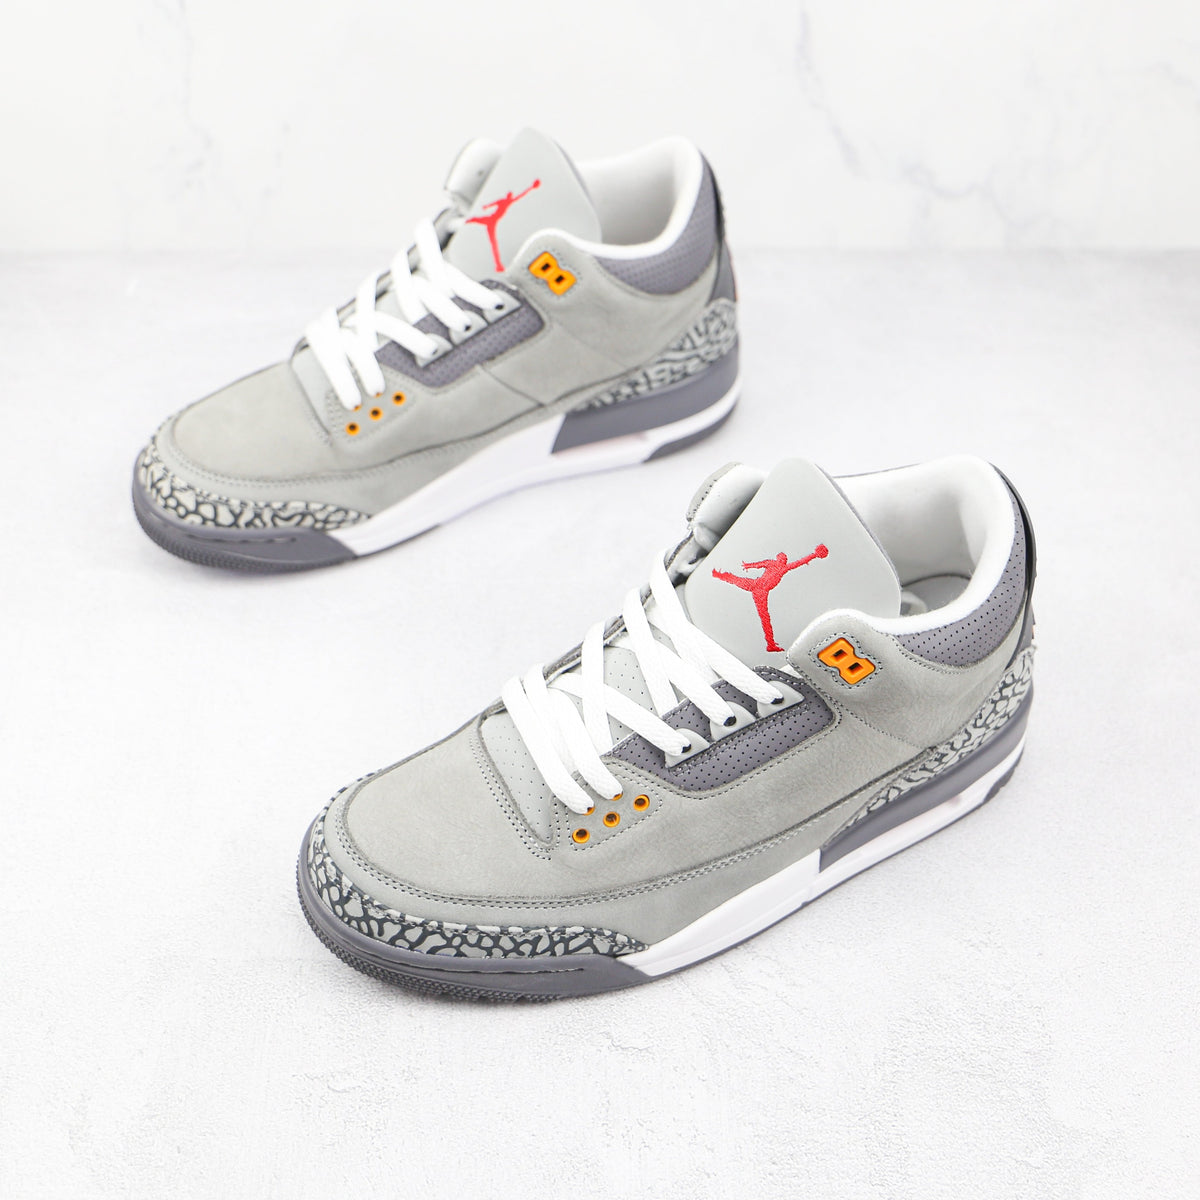 Air Jordan 3 Cool Grey